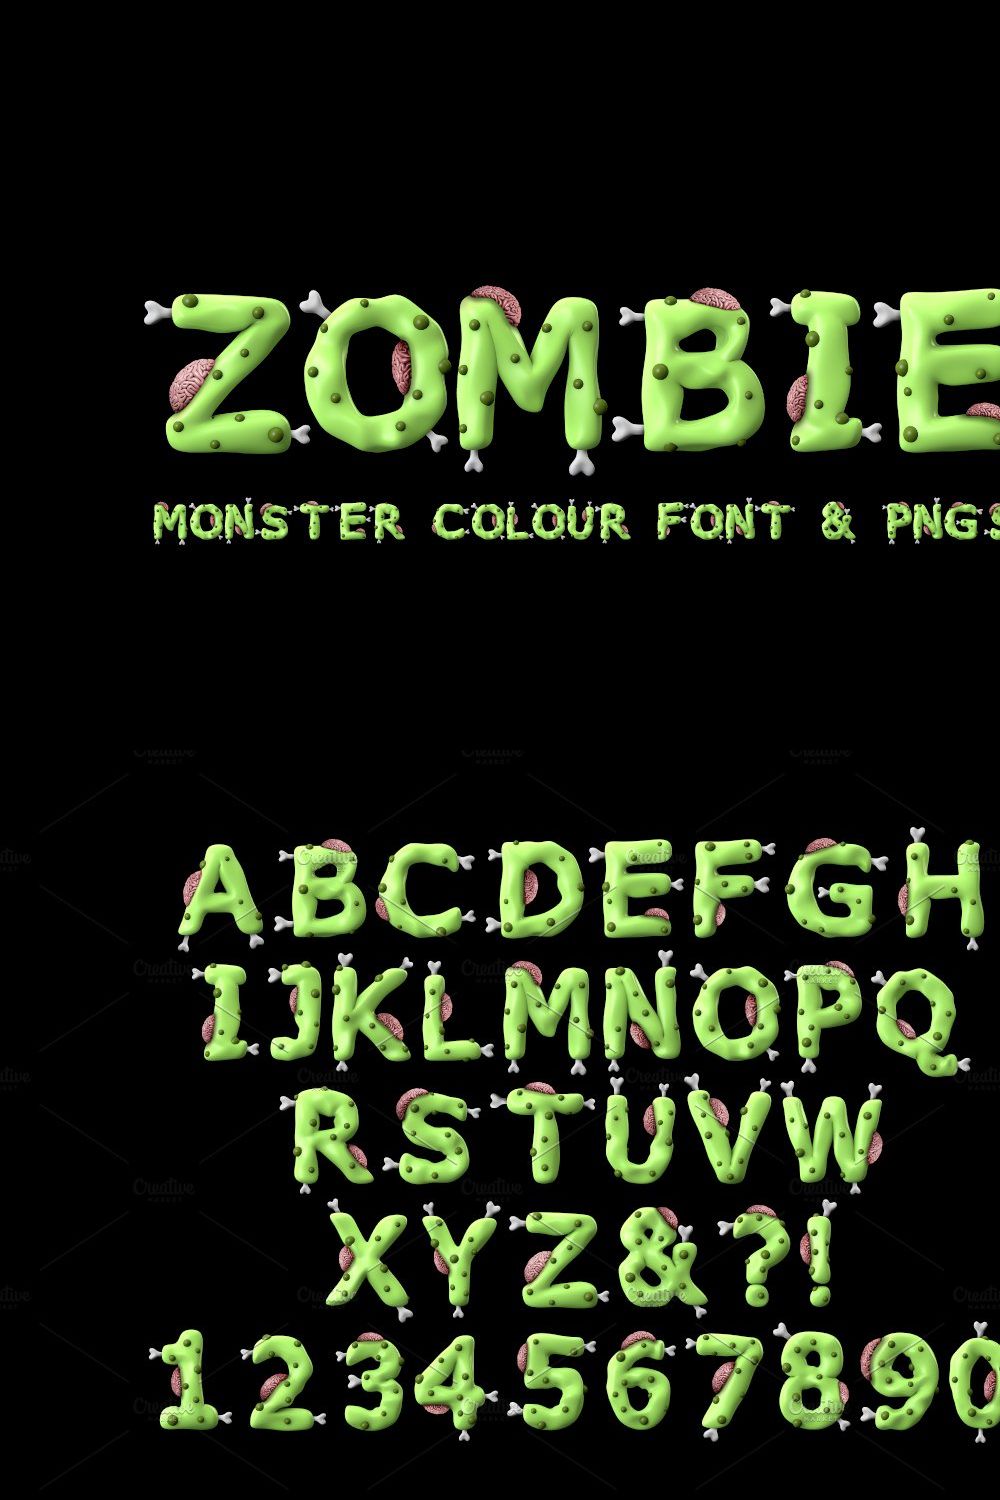 Zombie colour font pinterest preview image.